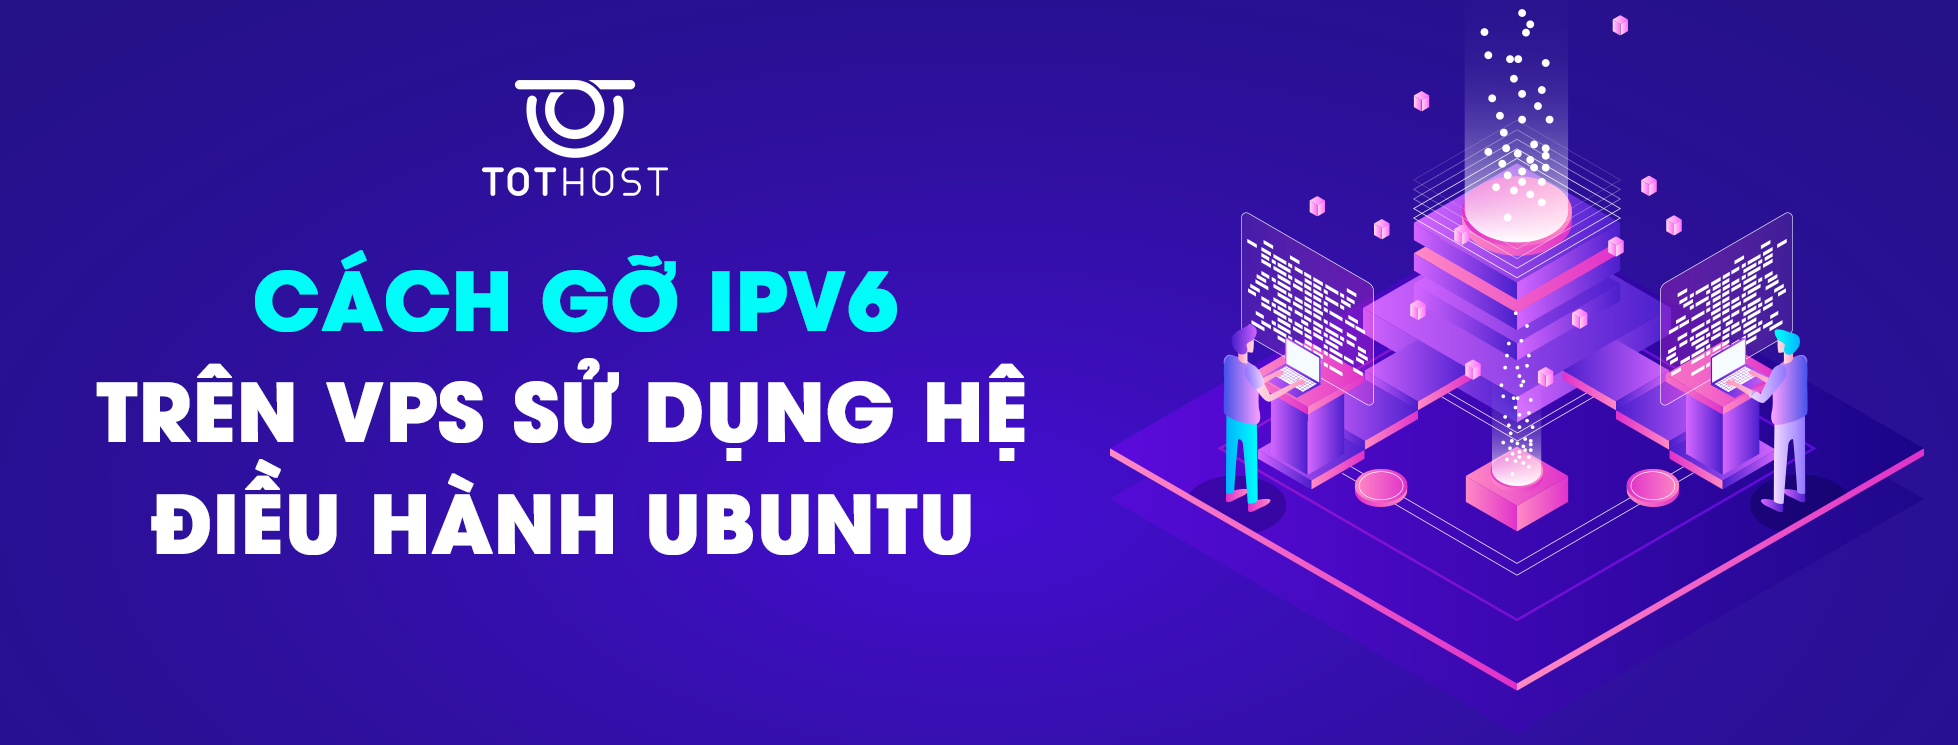 Cách gỡ IPv6 trên Ubuntu VPS